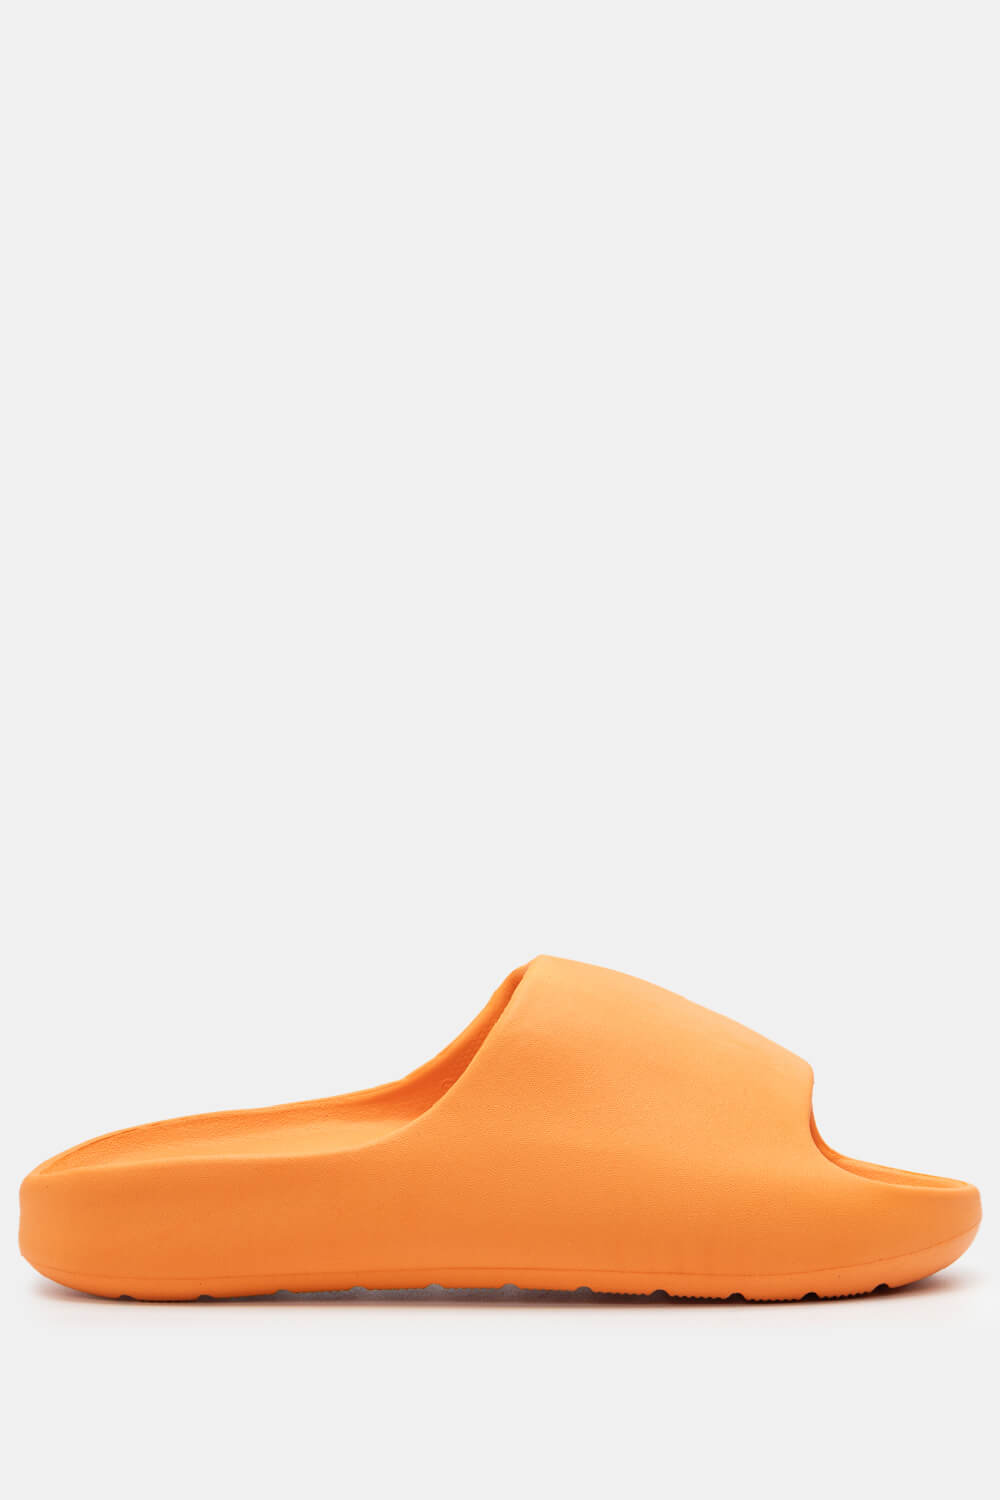 Παντόφλες Δίσολες Μονόχρωμες - Πορτοκαλί ΠΑΠΟΥΤΣΙΑ > Jelly Shoes